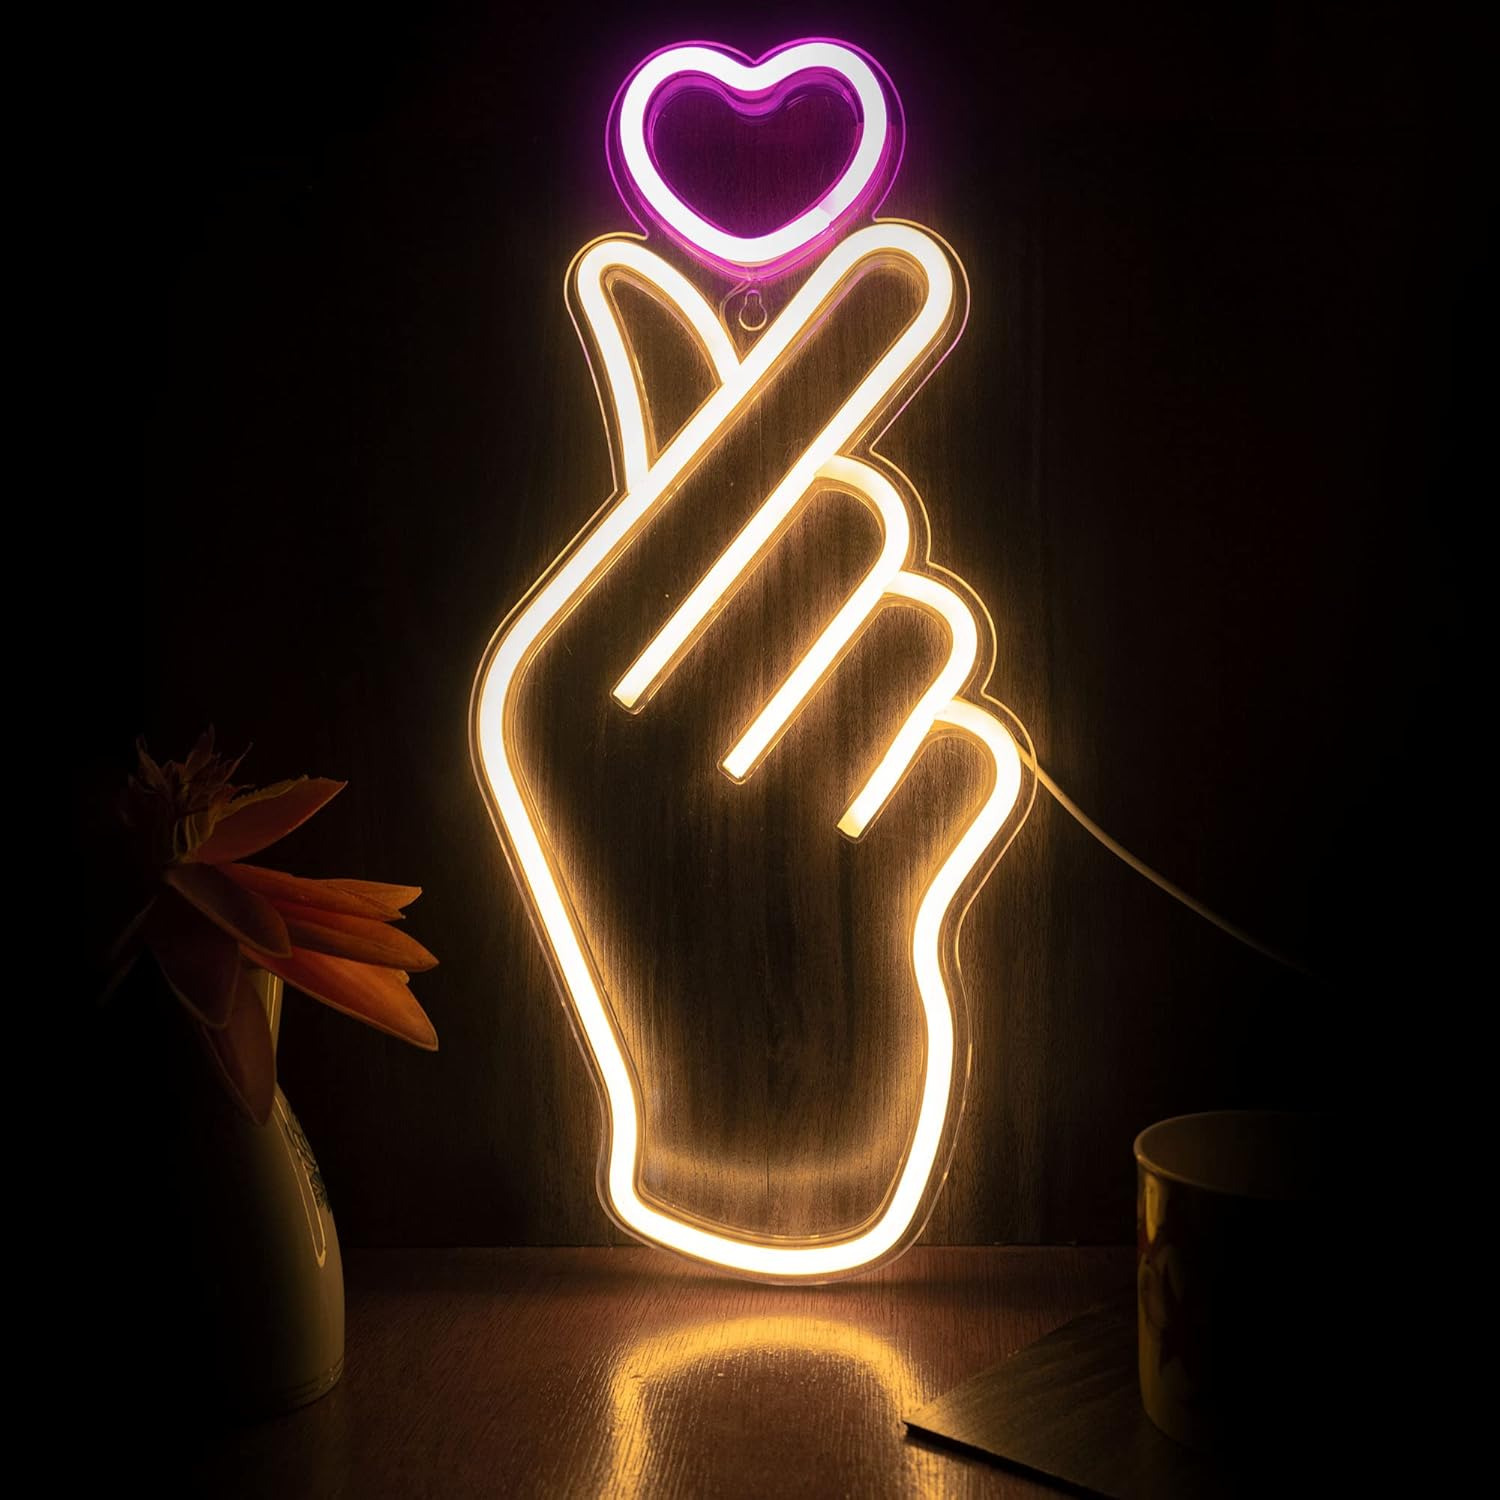 Finger Heart Neon Signs - Heart Thumb South Korean Novelty LED Neon Light for K-